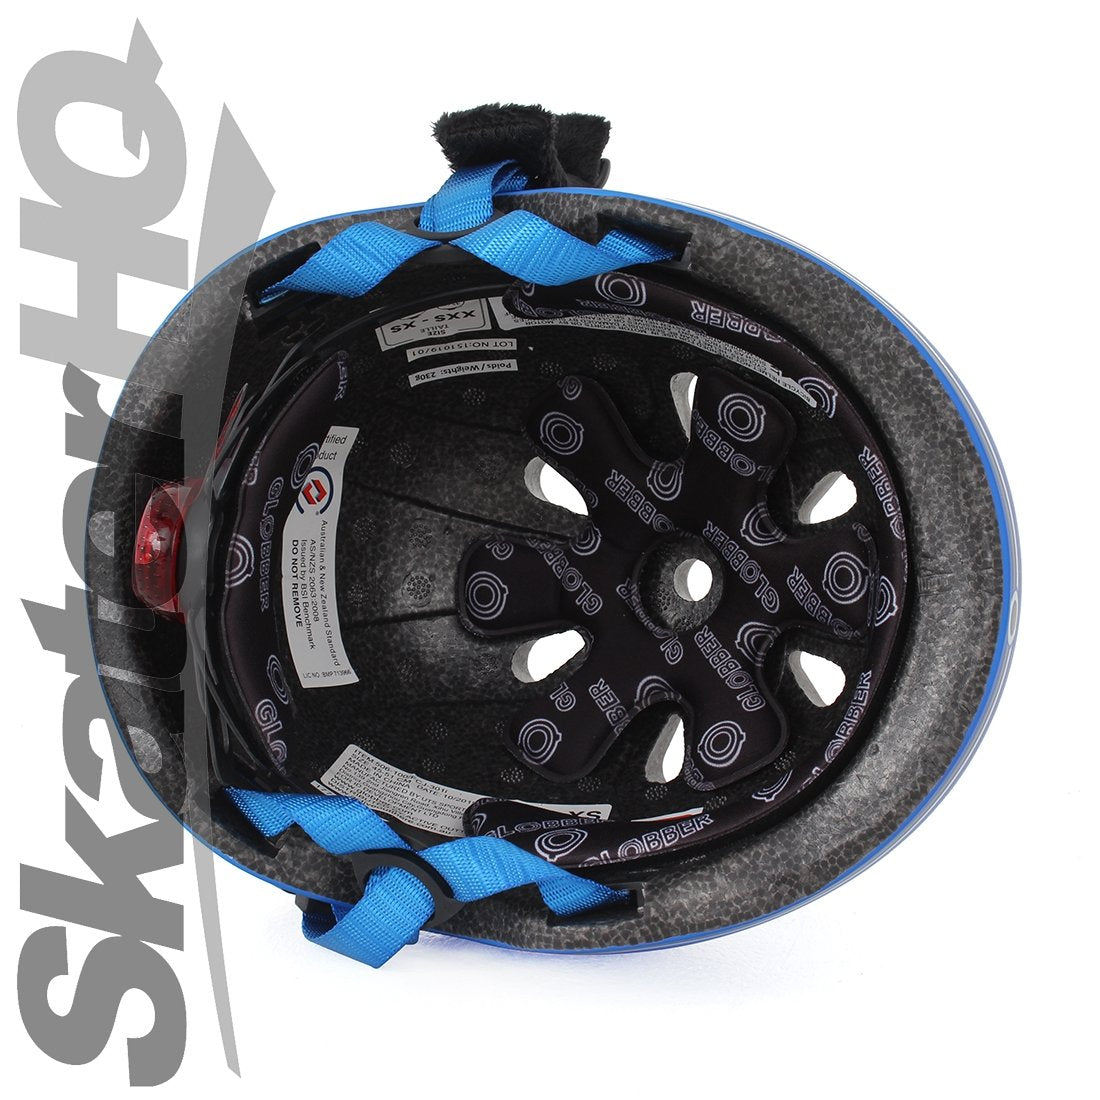 Globber LED Kids Helmet - Navy Blue - XS/S Helmets